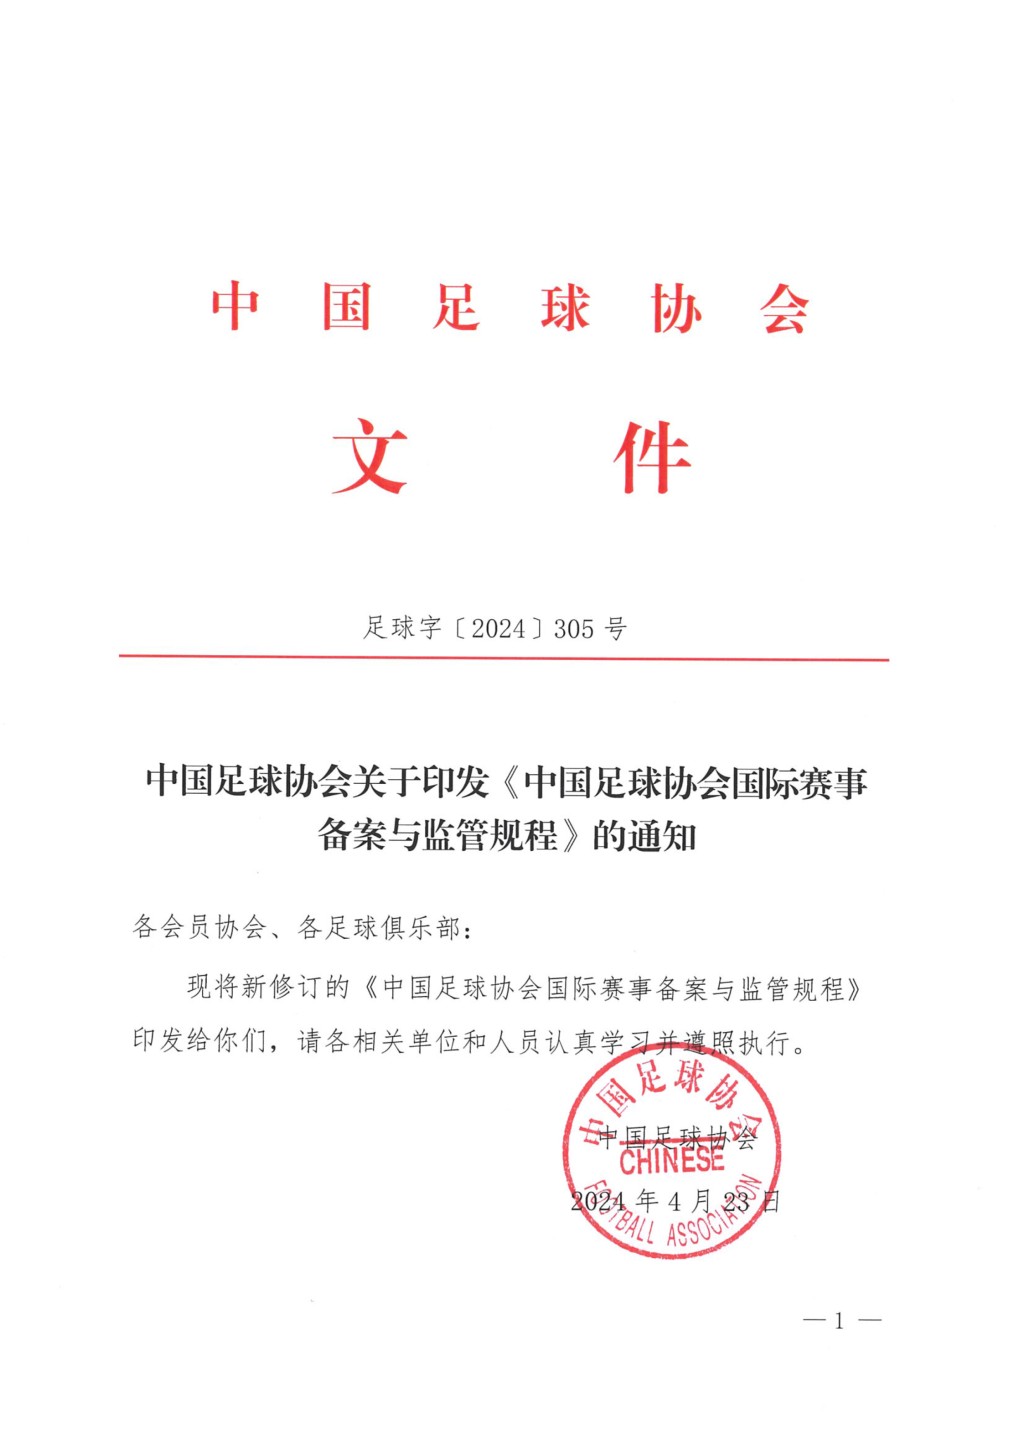 中国足协23日发布“中国足球协会国际赛事备案与监管规程”，网民称为“美斯条款”。